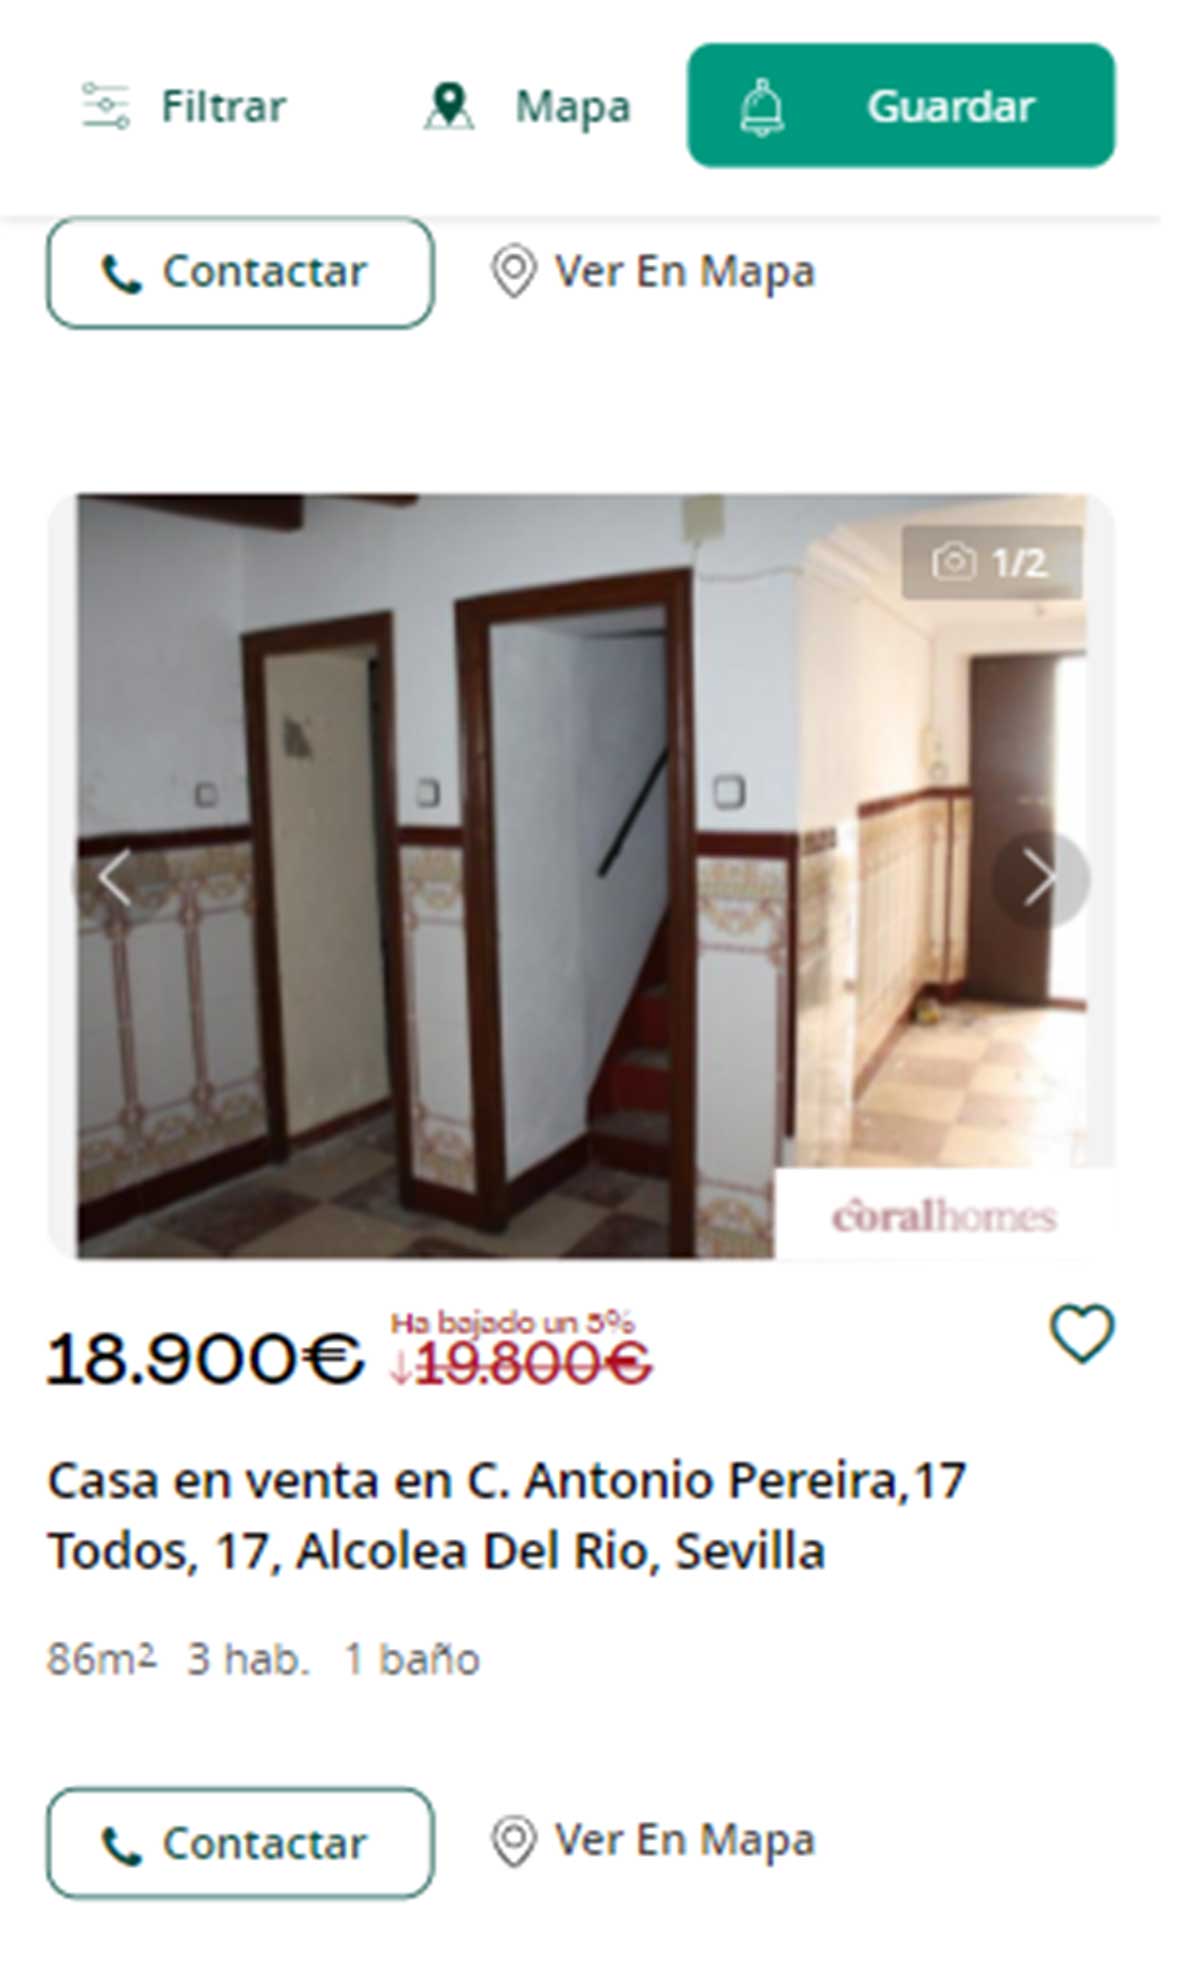 Piso en Sevilla por 18.900 euros